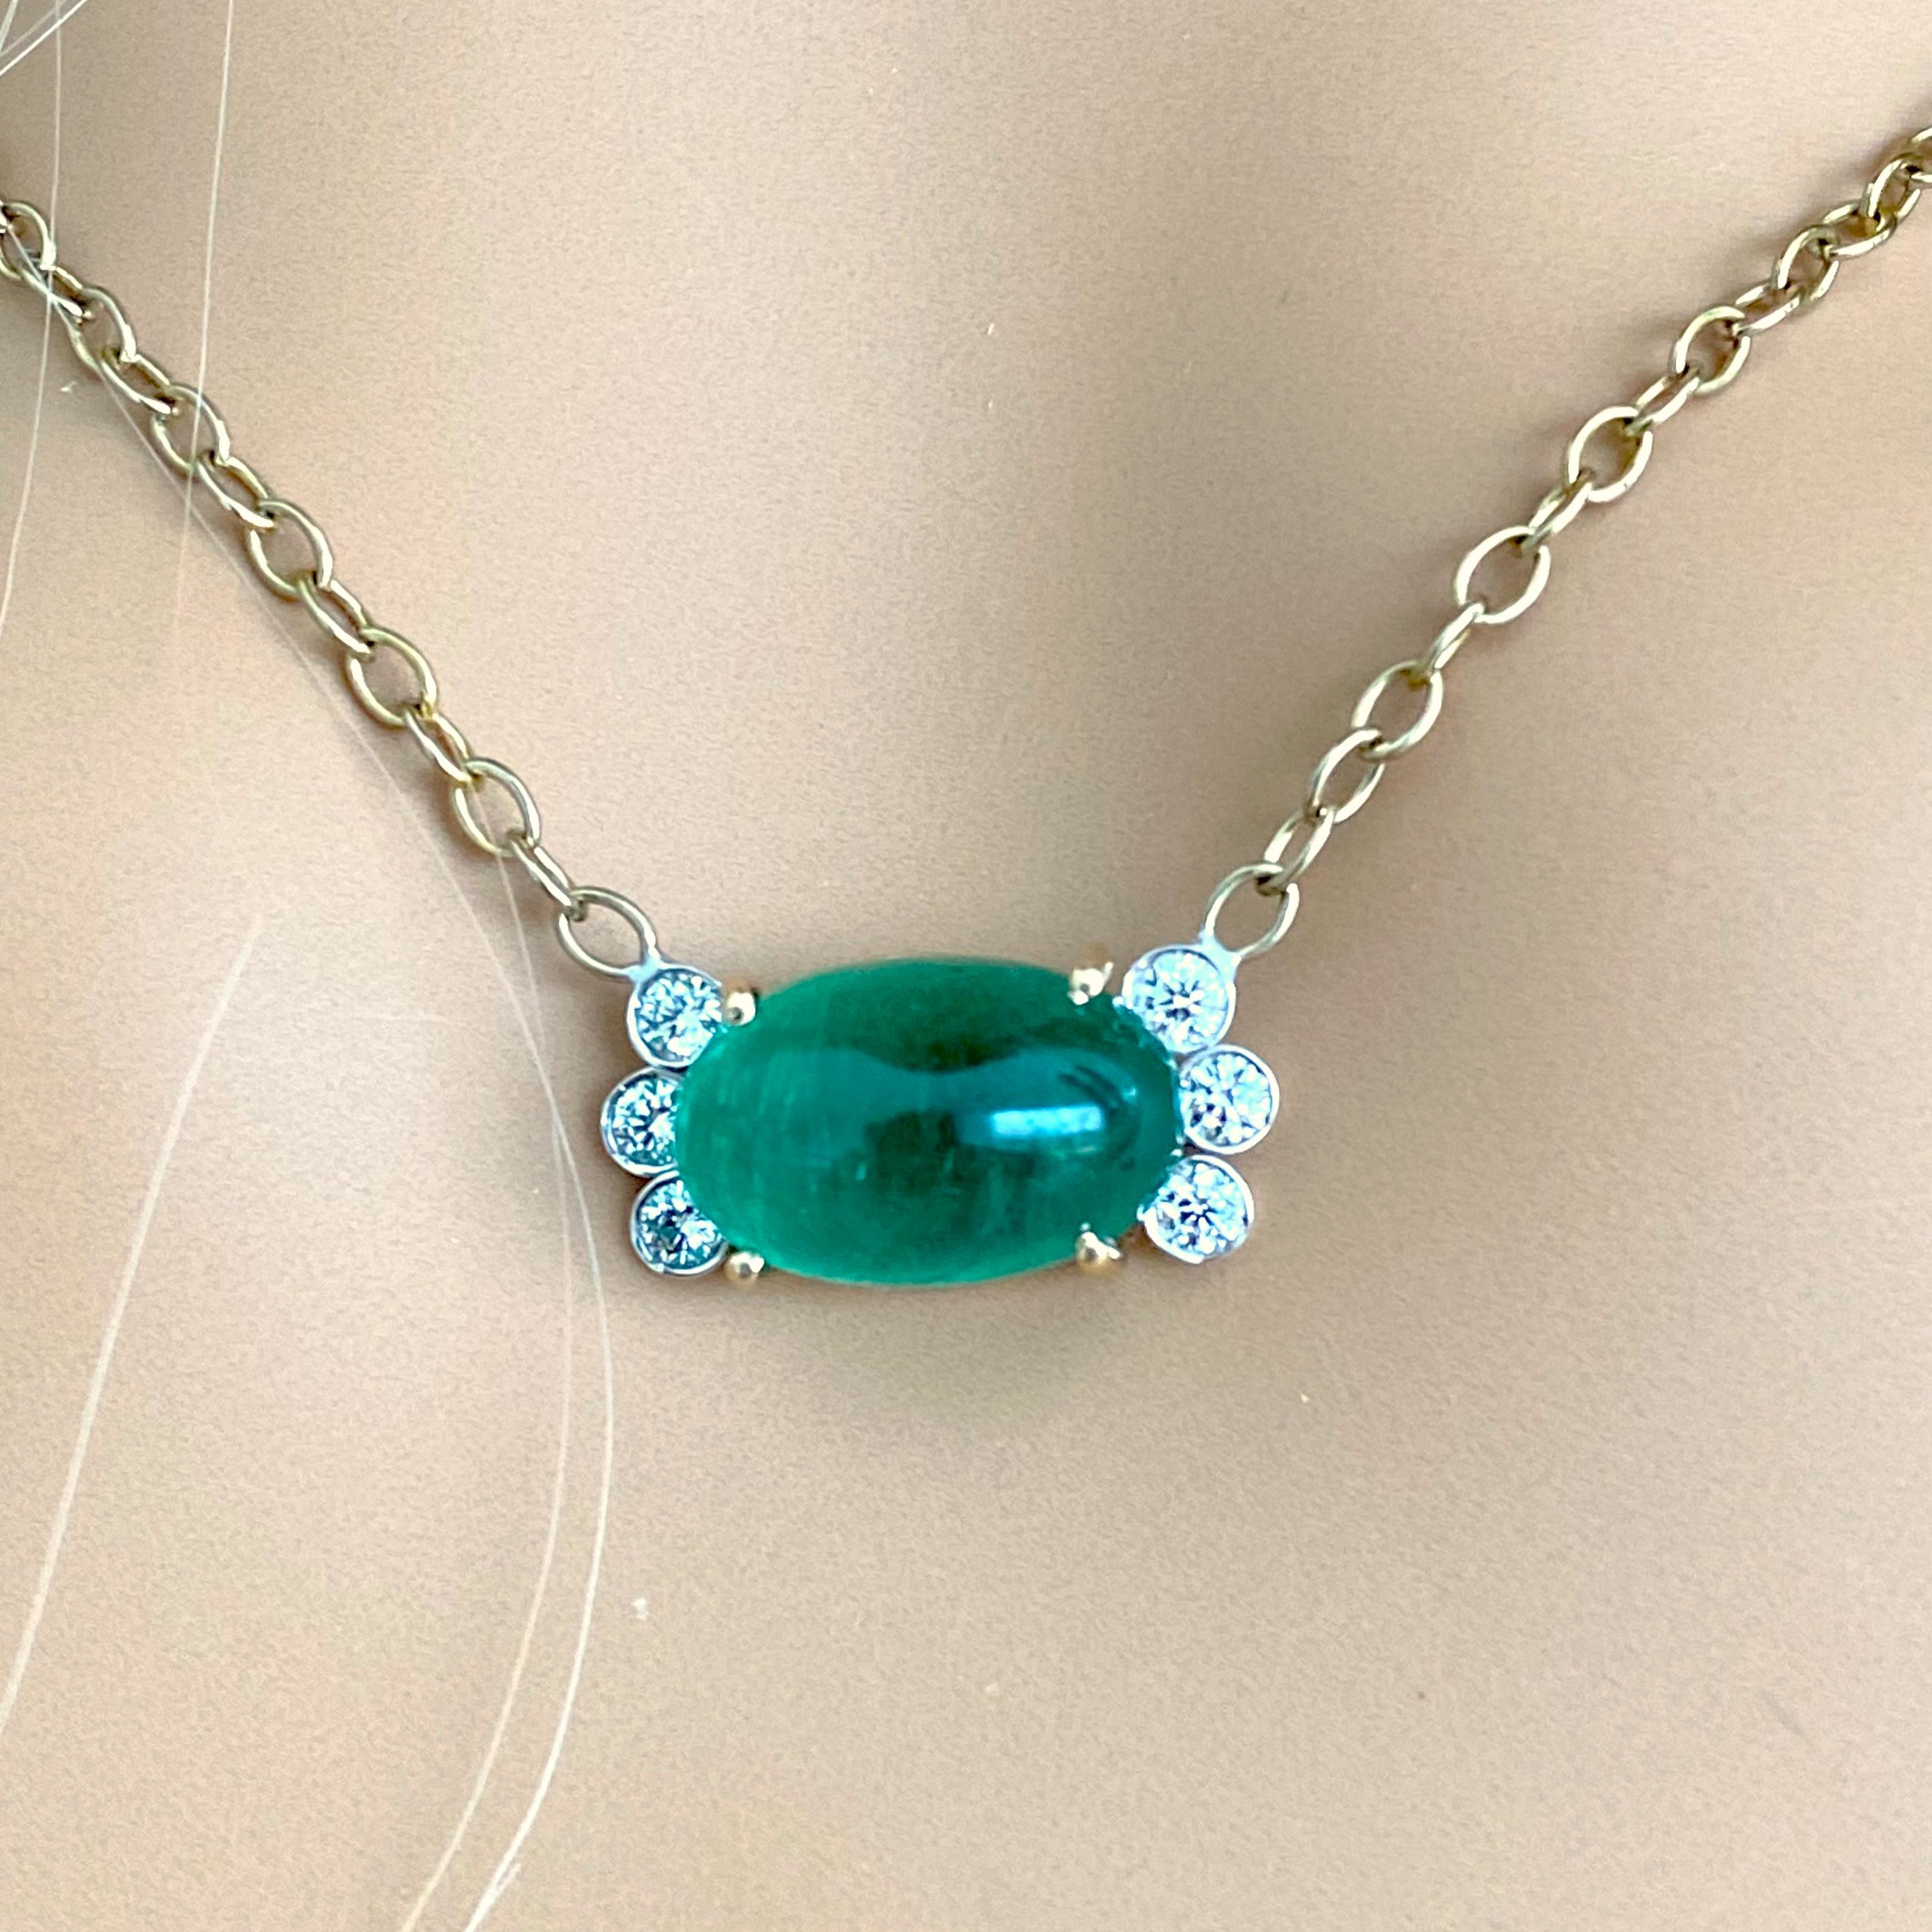 cabochon emerald necklace